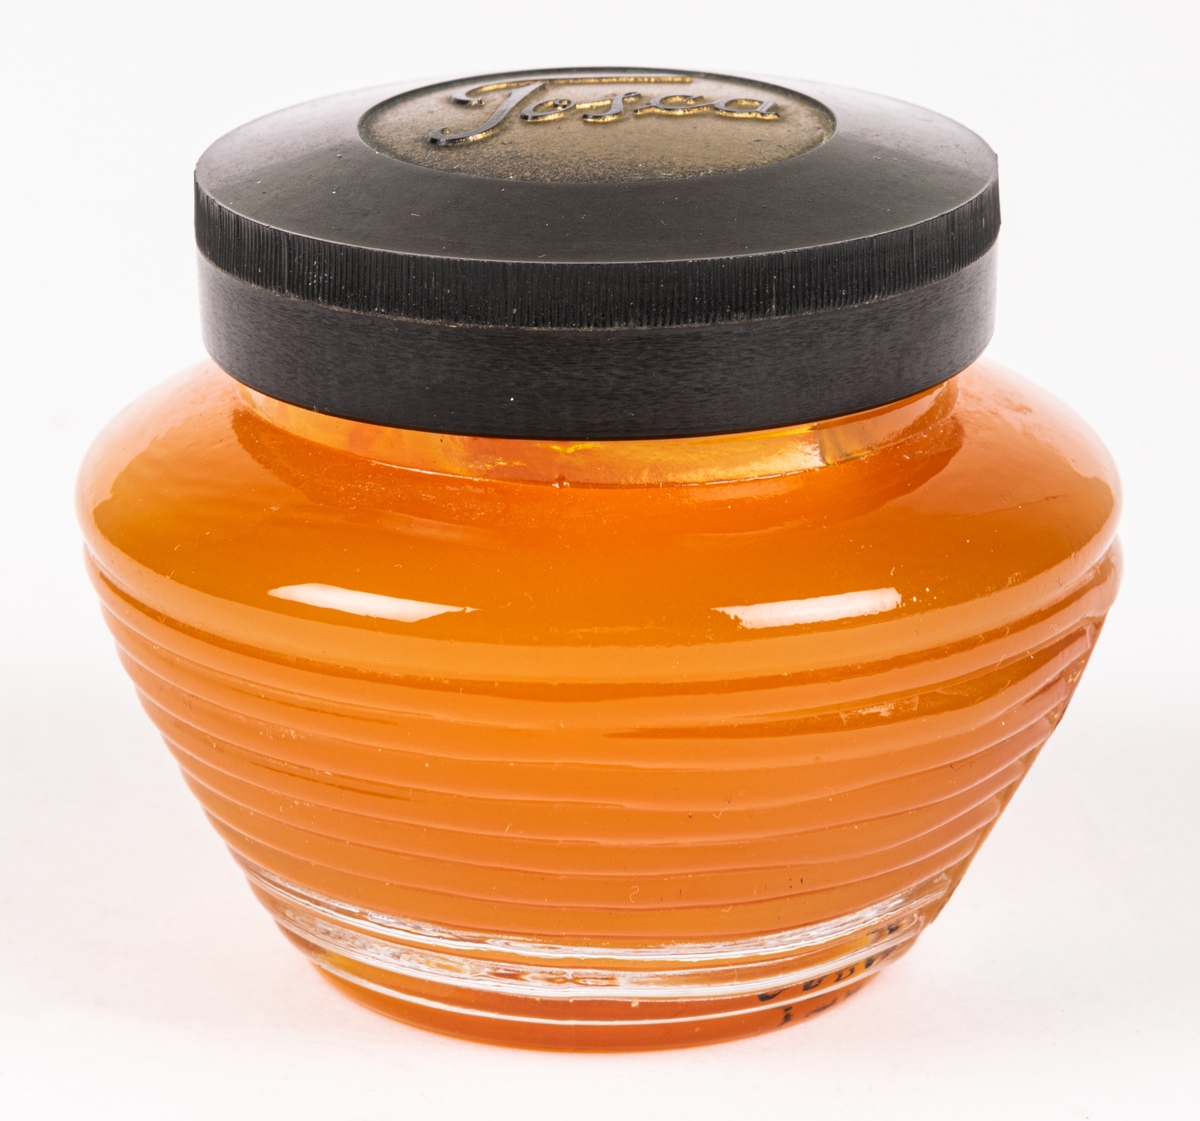 Glasburk med hårpomada (orginalförpackning). Genomskinligt glas med orangefärgad pomada. Svart lock med texten "TOSLA". På sidan en pappersetikett "4711 Tosca Brilliantine.